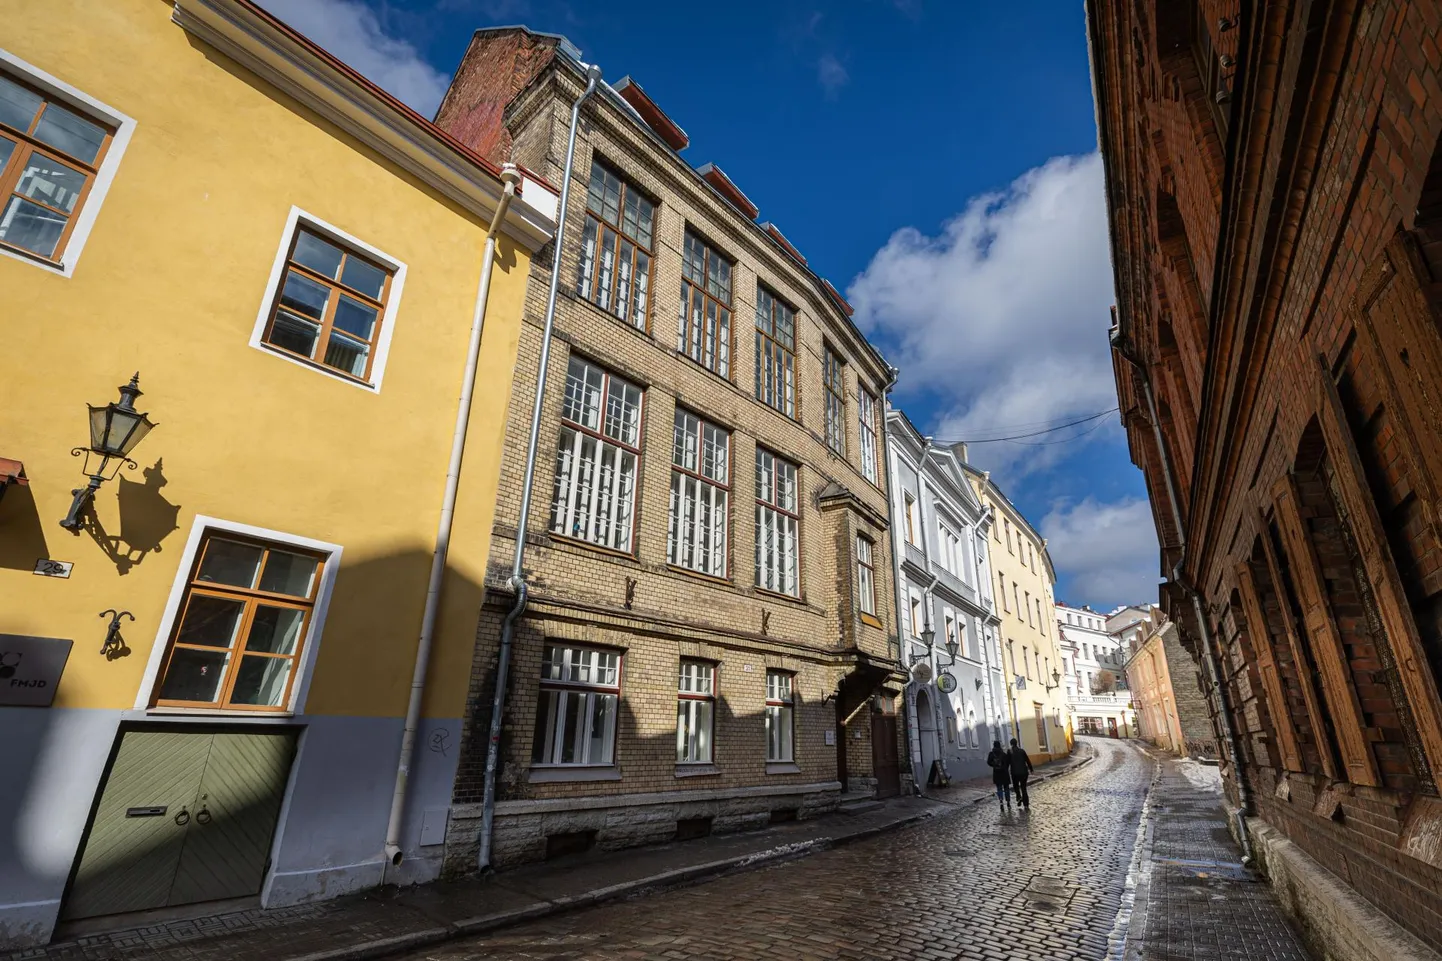 Vene tänav 31 majas asub praegu Püha Miikaeli Kool. Vanalinnale ebatüüpiliselt pole tegu paekivist, vaid tellistest ehitisega.